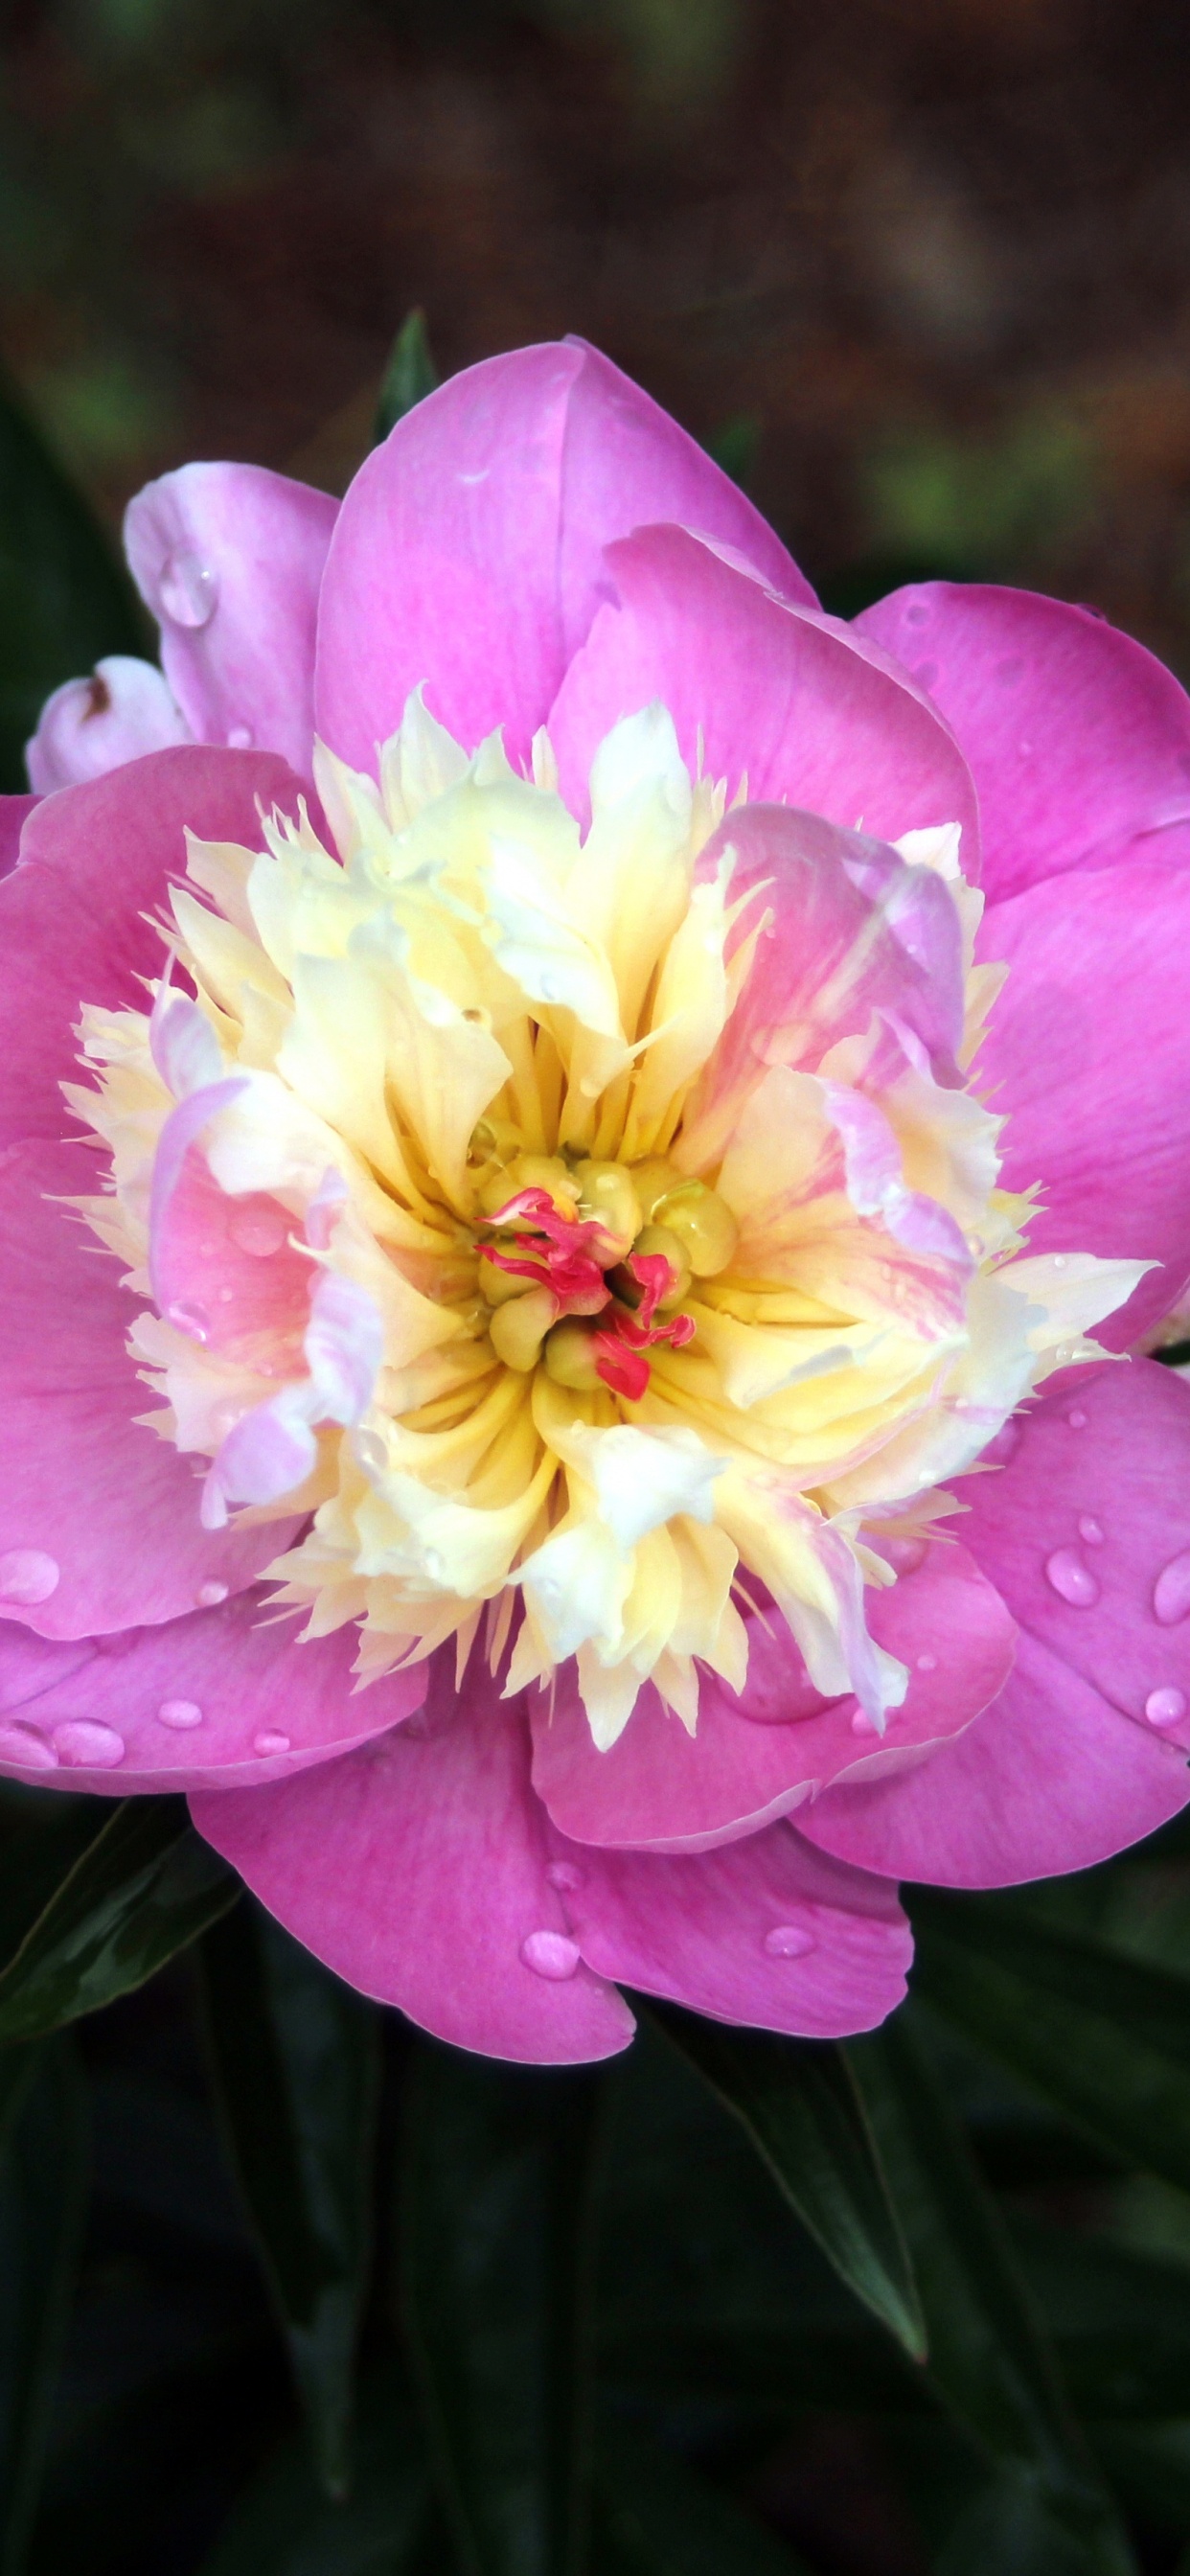 Pink Flower in Tilt Shift Lens. Wallpaper in 1242x2688 Resolution